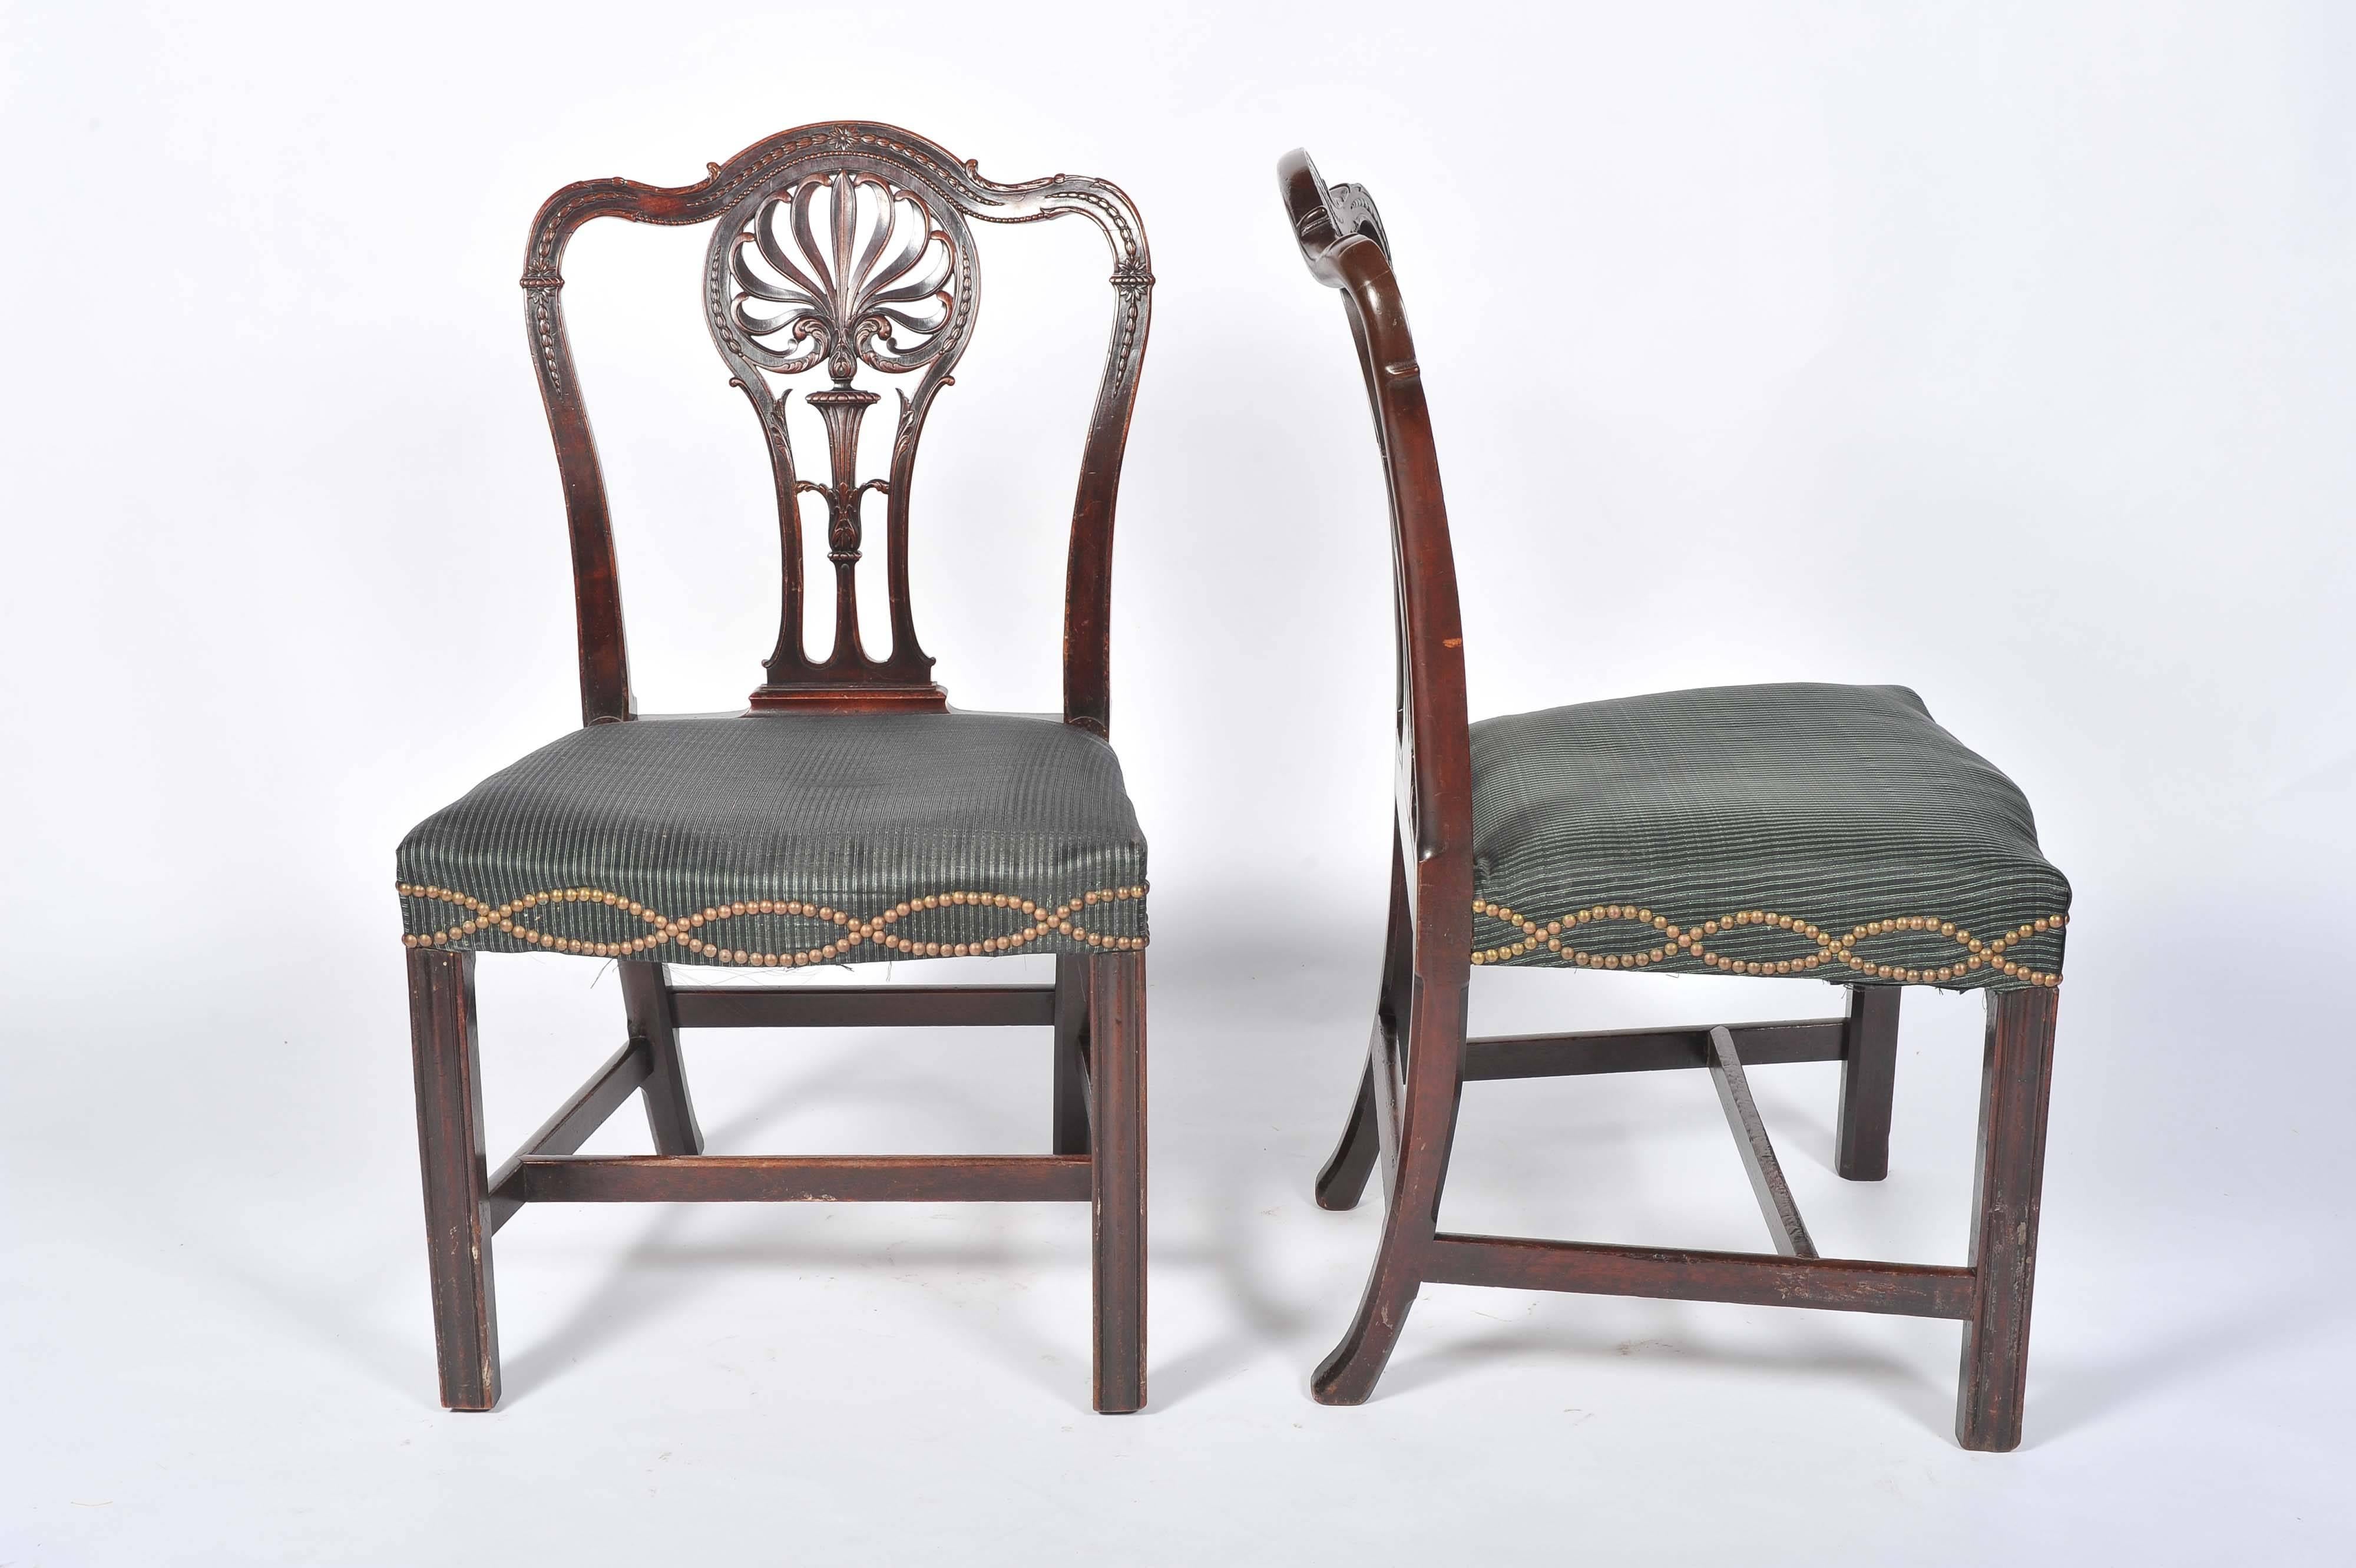 Une paire de chaises latérales de bonne qualité, d'influence Adam, avec une décoration feuillue sculptée sur les plinthes, une assise en forme de serpentin avec un rembourrage à clous serrés, reposant sur un pied moulé à section carrée.